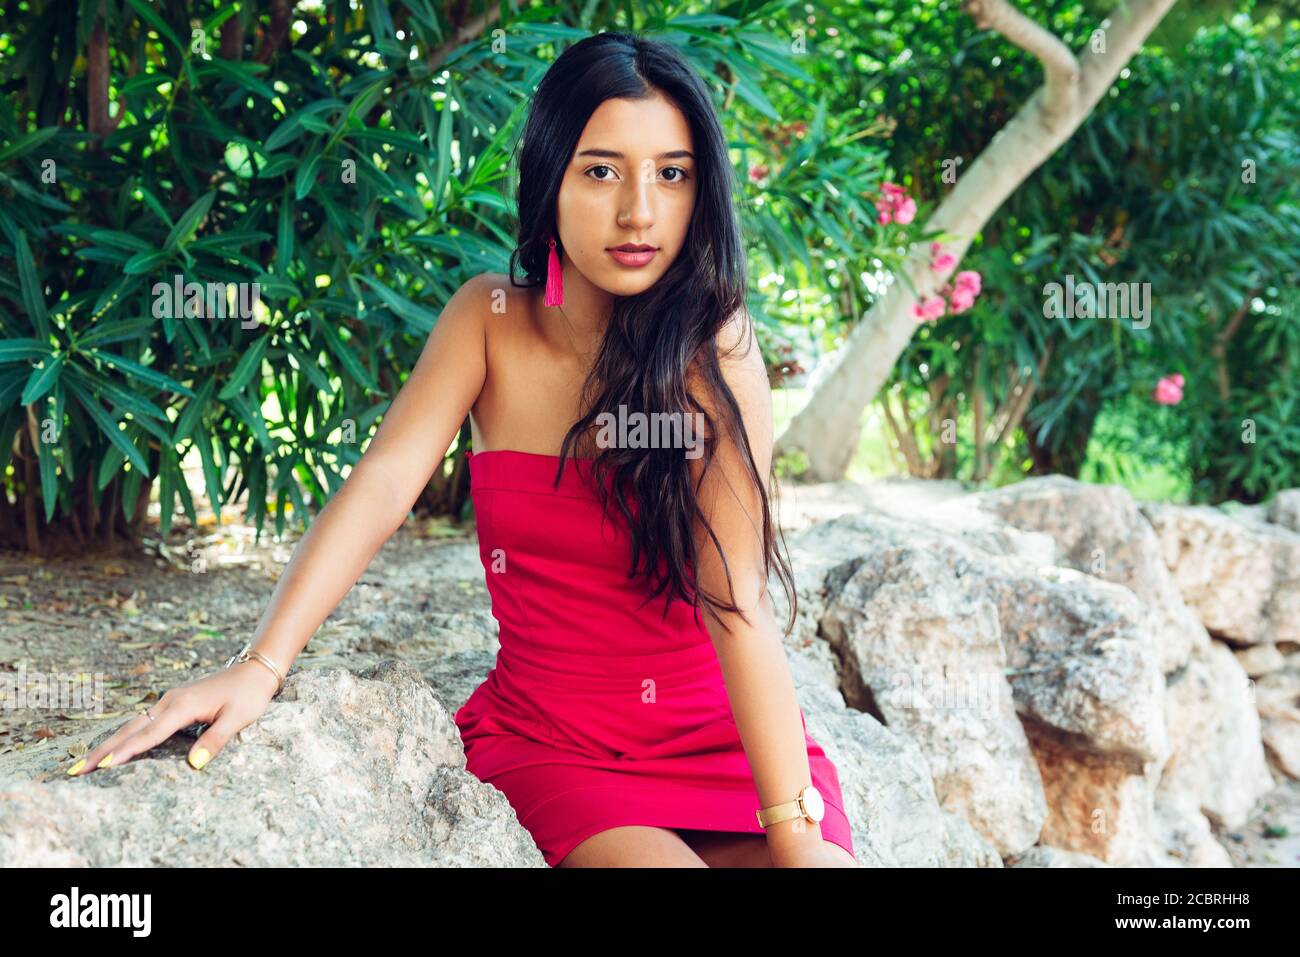 Jeune fille latine avec de longs cheveux noirs et robe rouge, dans une zone de végétation et de rochers. Banque D'Images